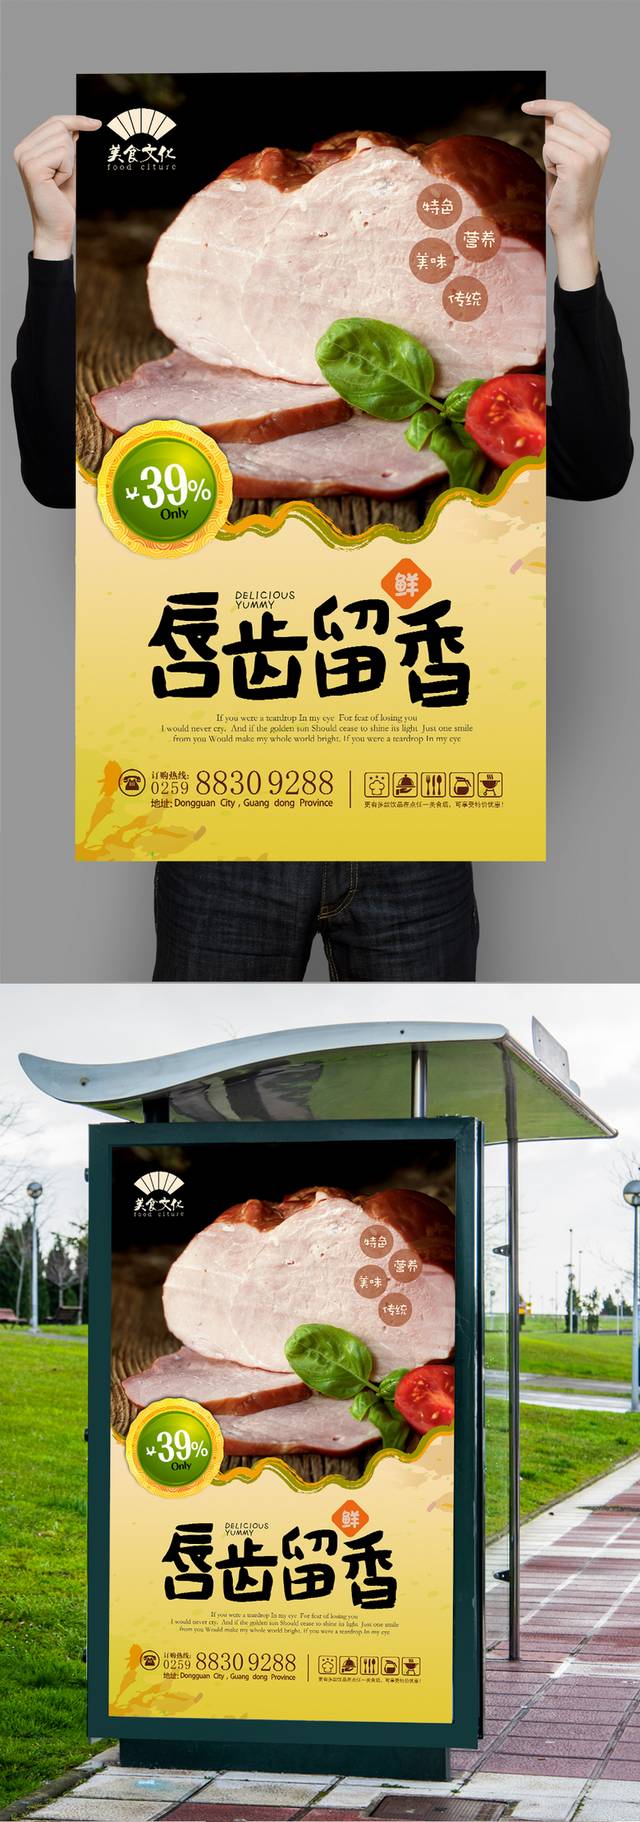 清新火腿促销海报设计